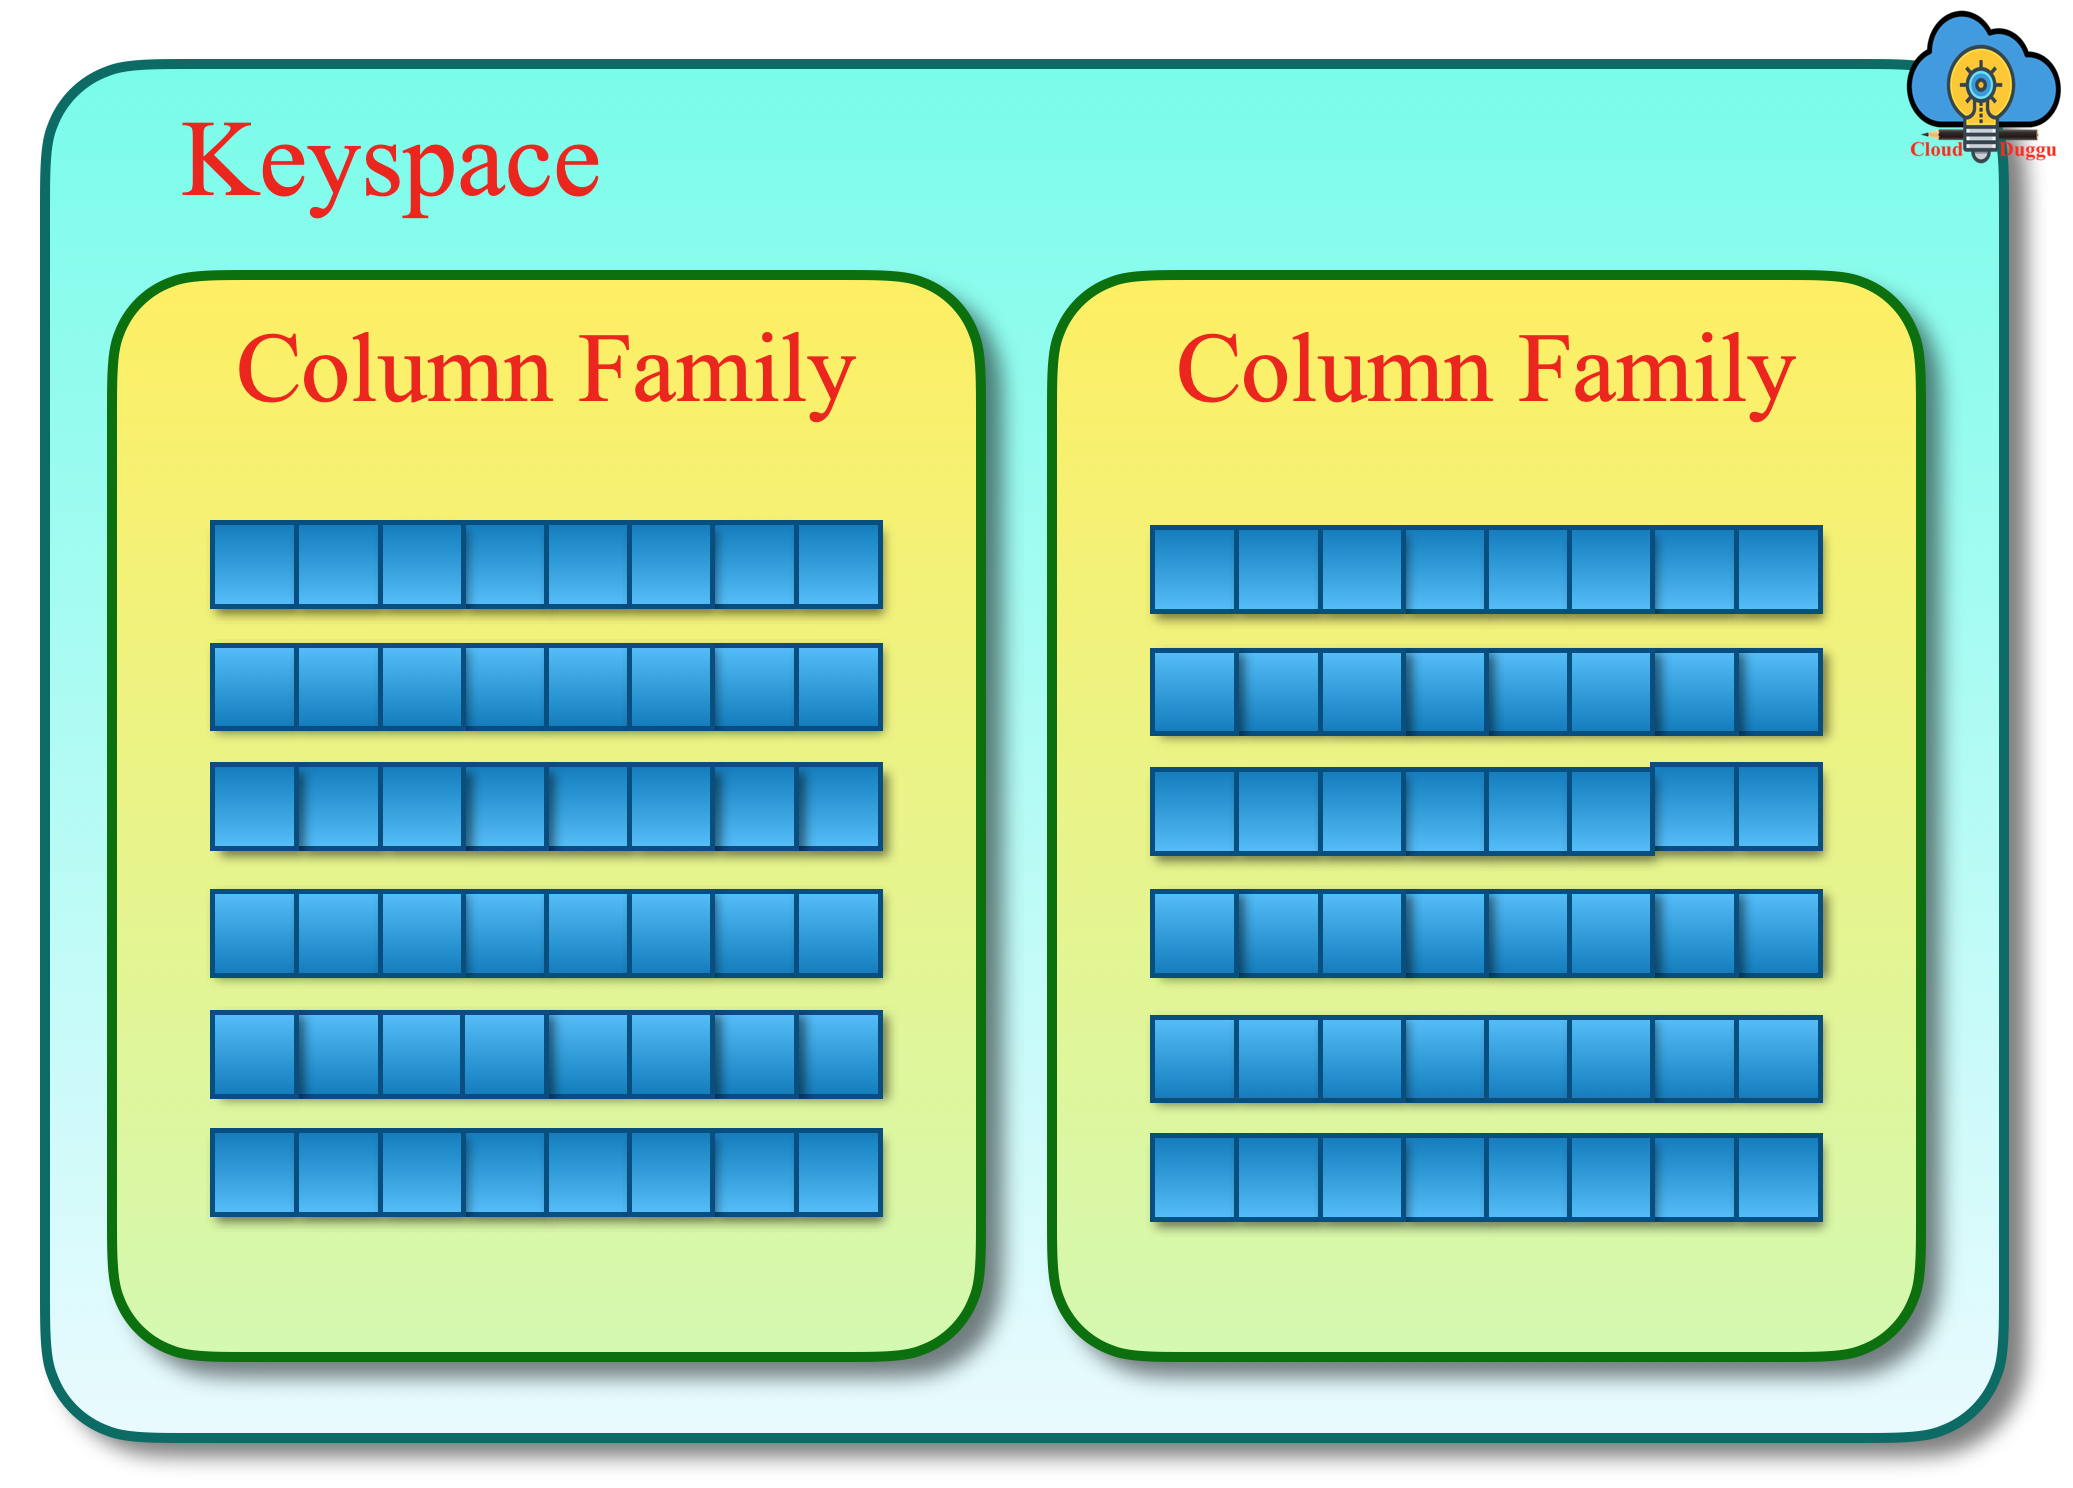 cassandra keyspace schematic view cloudduggu